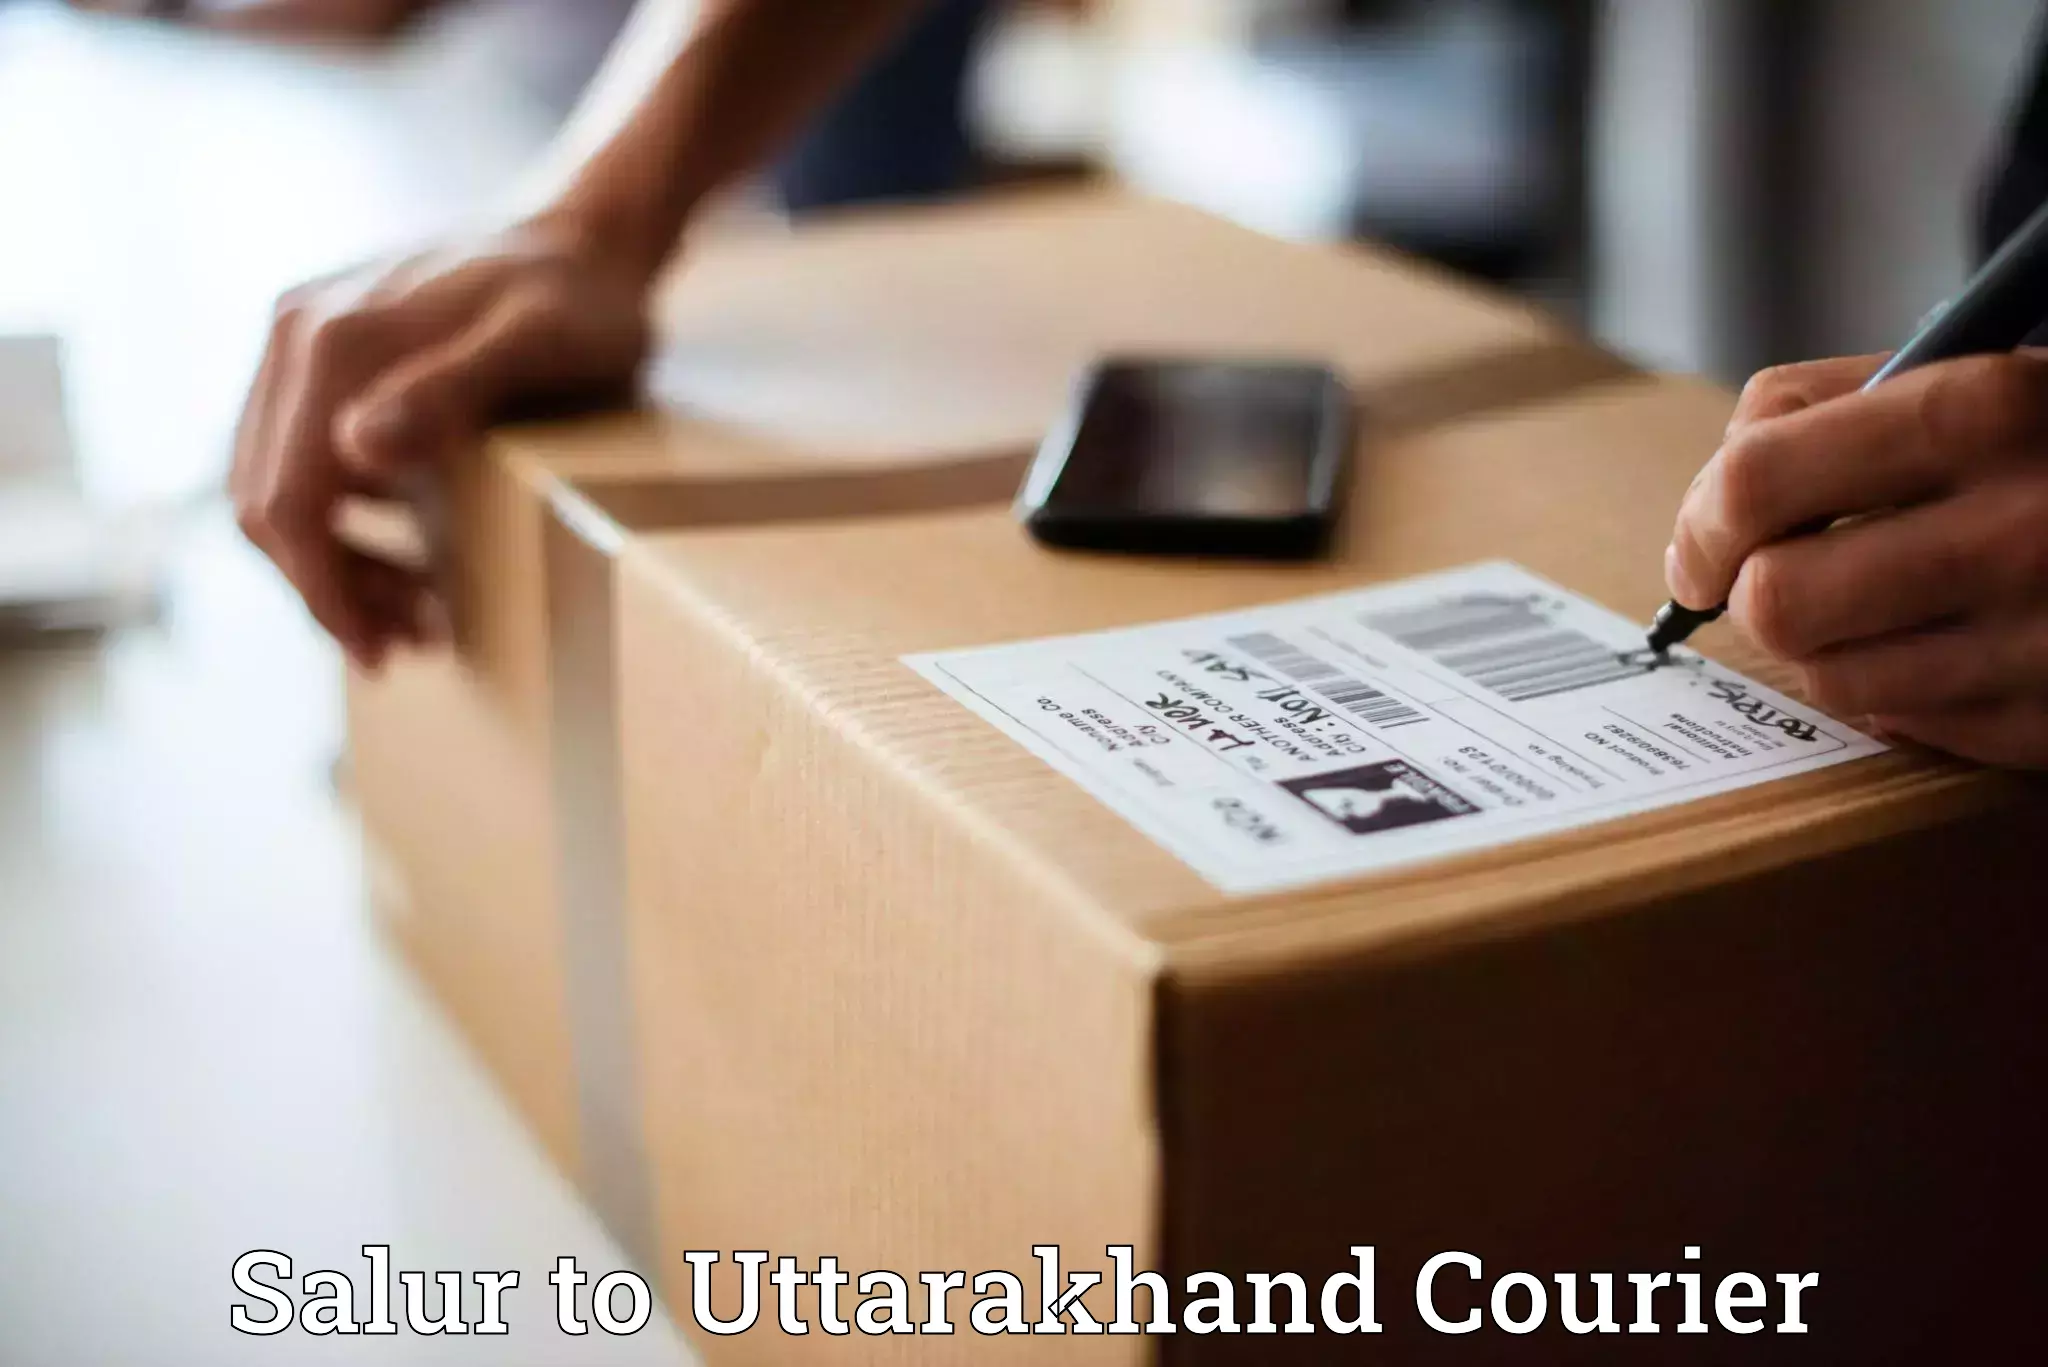 Efficient parcel delivery Salur to Kotdwara